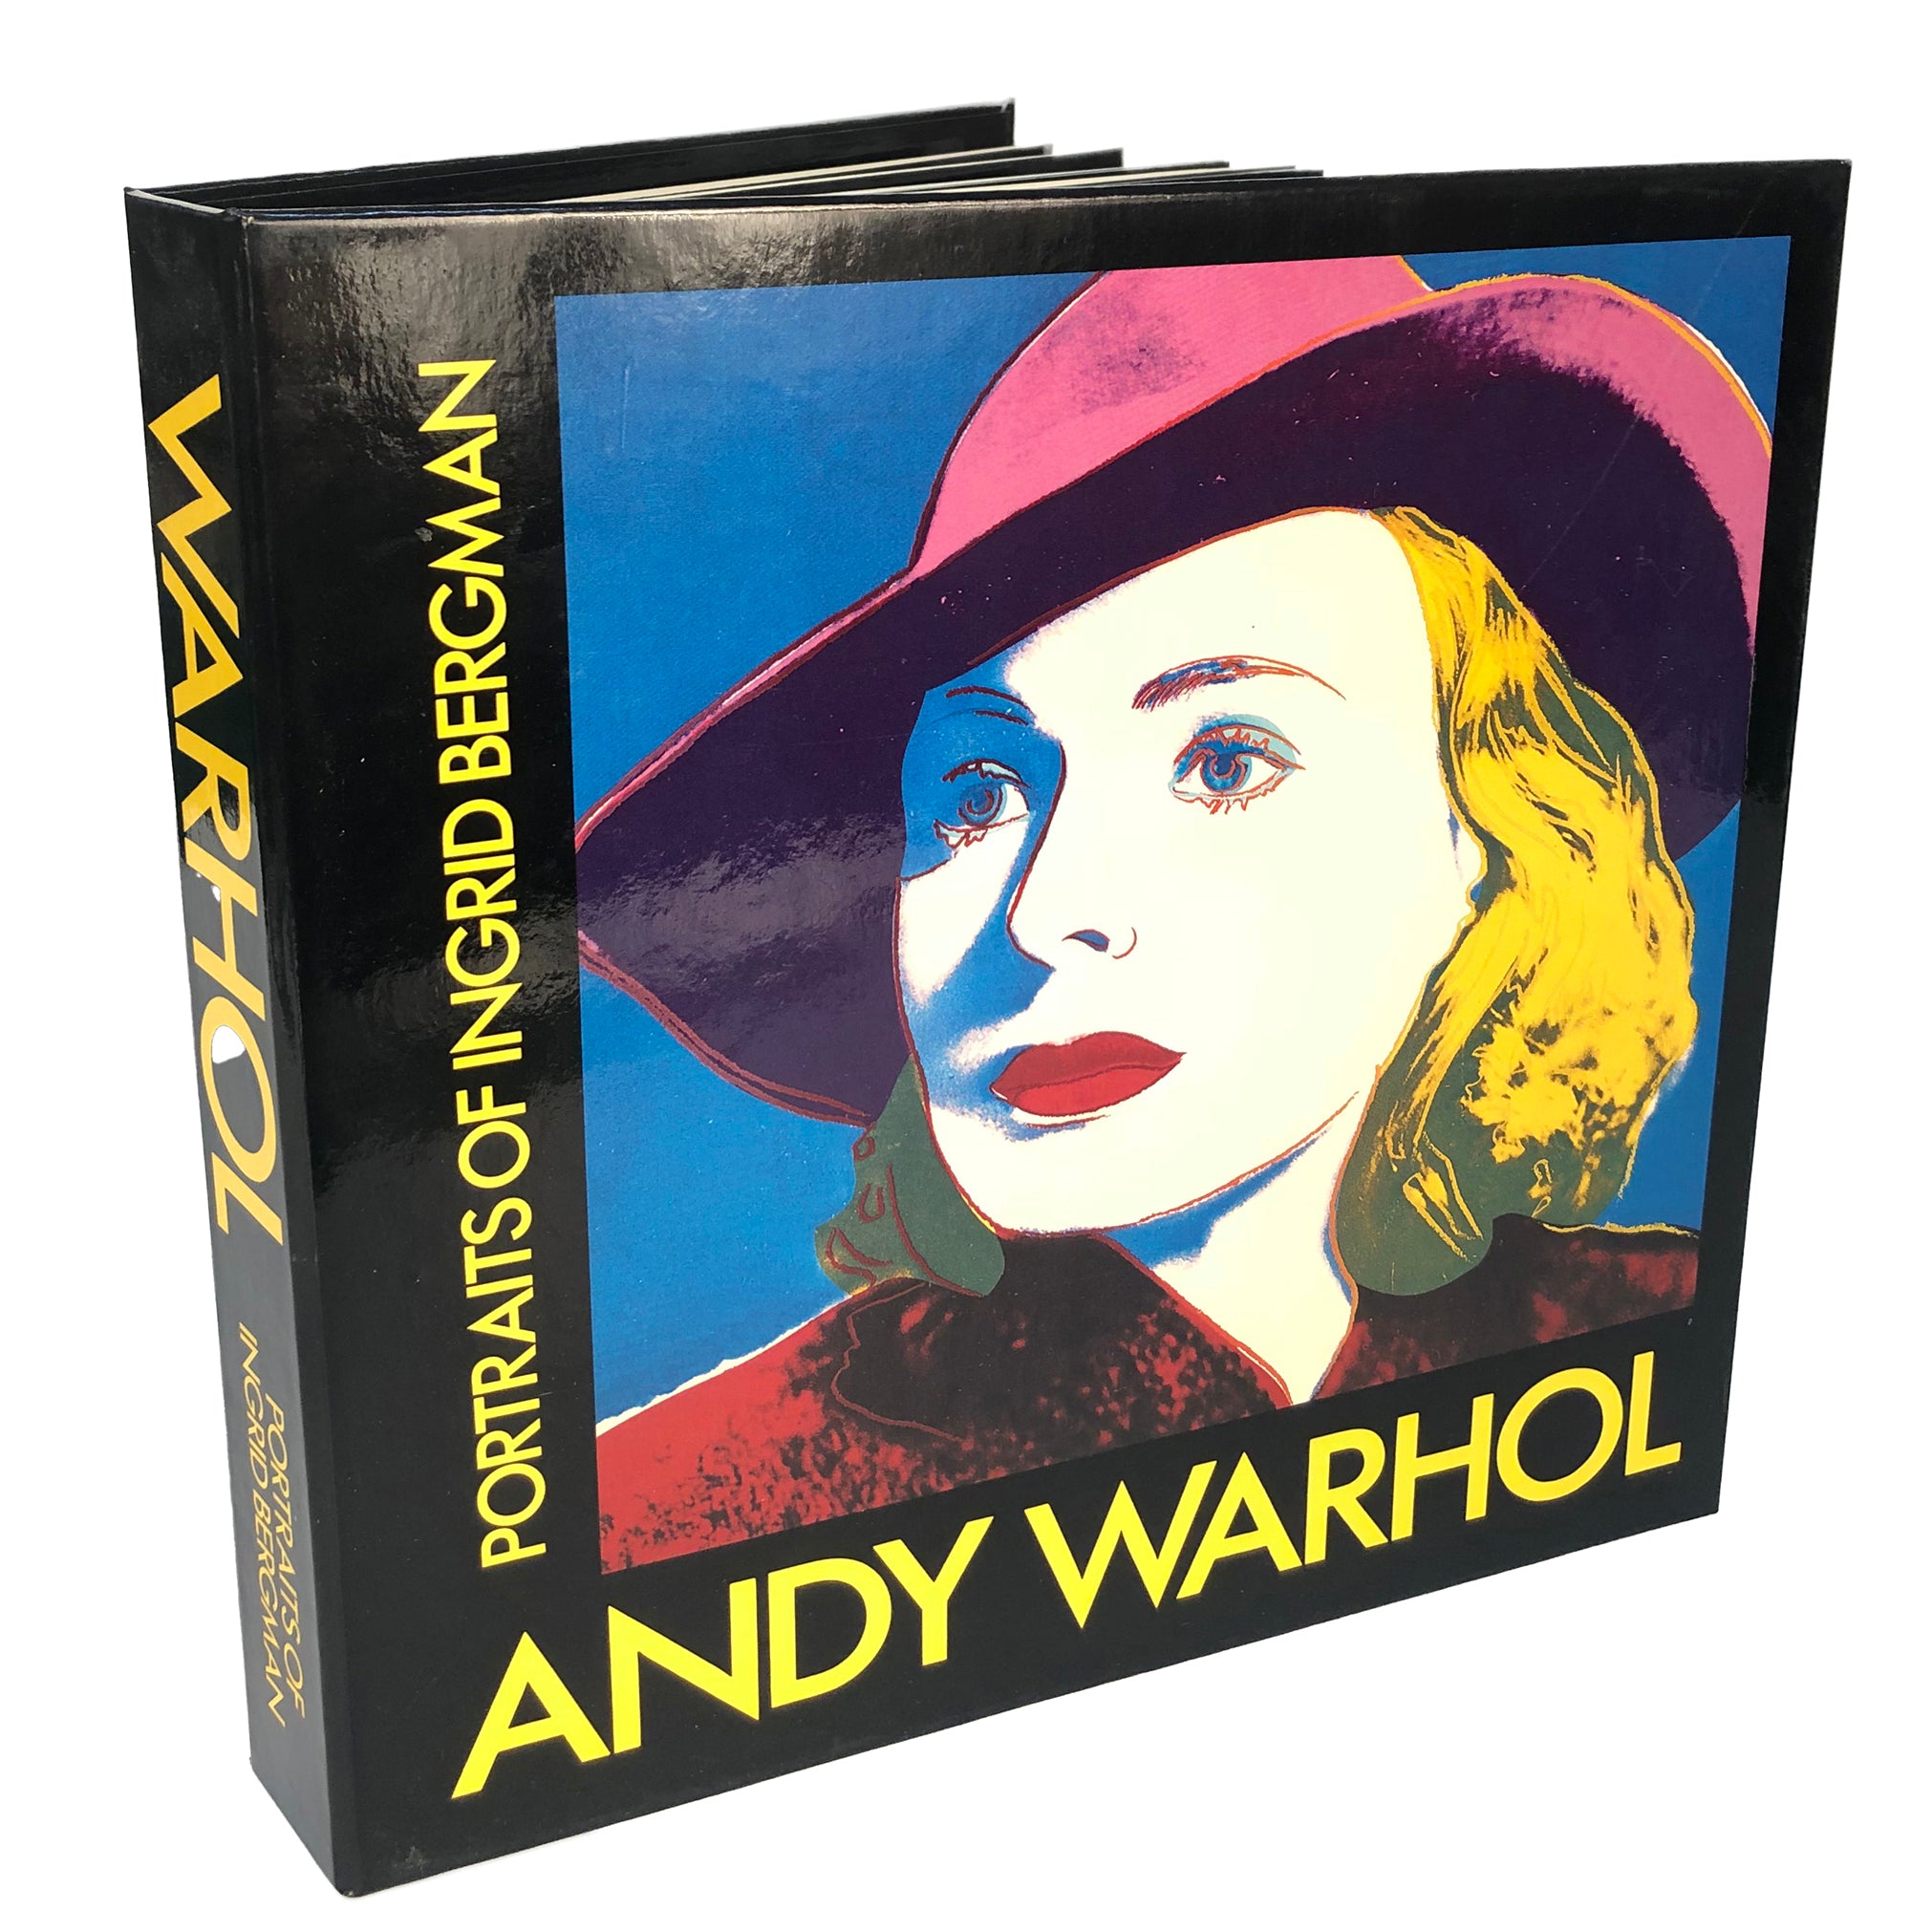 Vintage Ingrid Bergman poster with hat by Andy Warhol, 1983